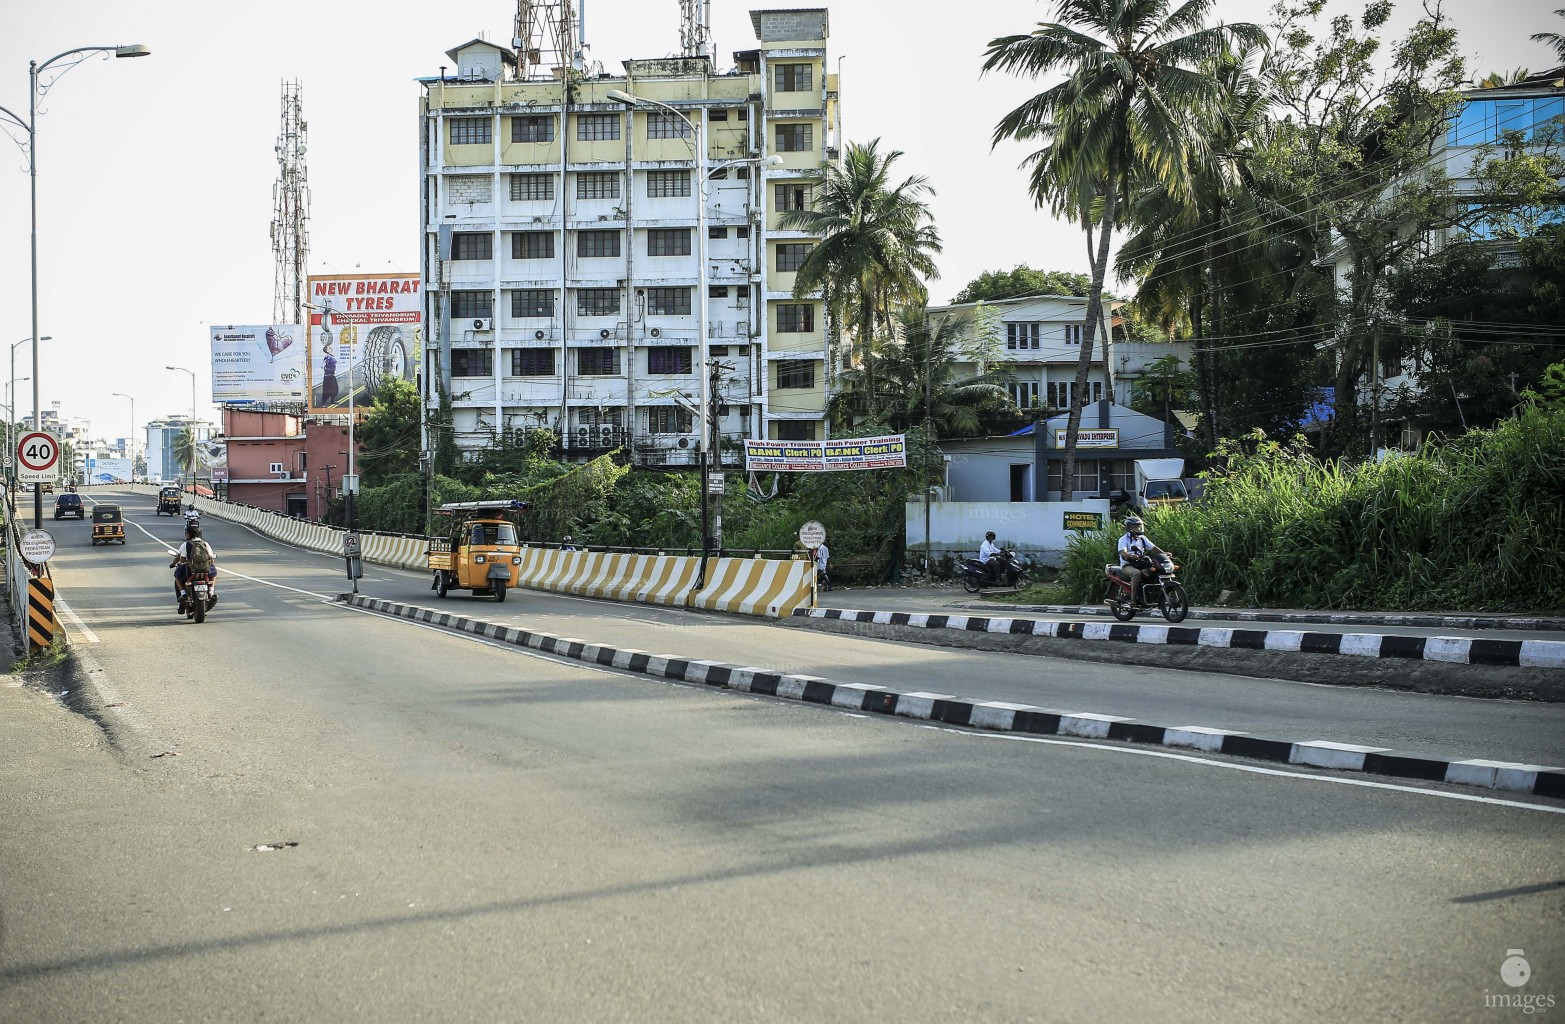 Traffic at its minimal in Thiruvananthapuram, India, Monday, December 21, 2015. (Images.mv Photo: Hussain Sinan)